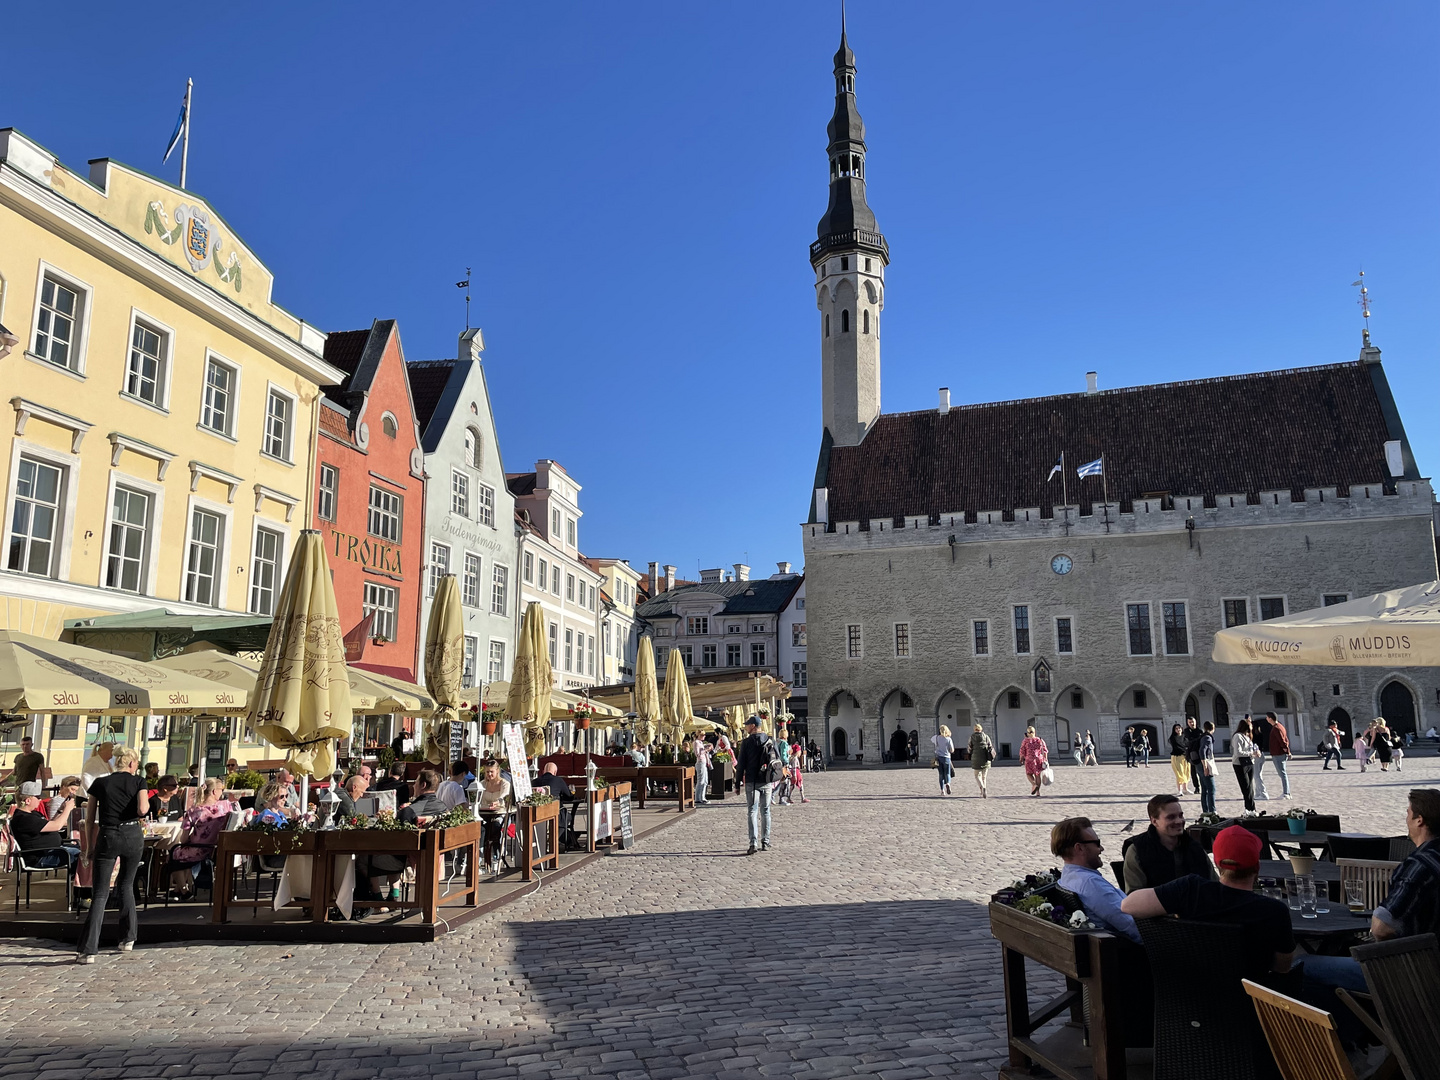 Rathausplatz in Tallinn, Estonia